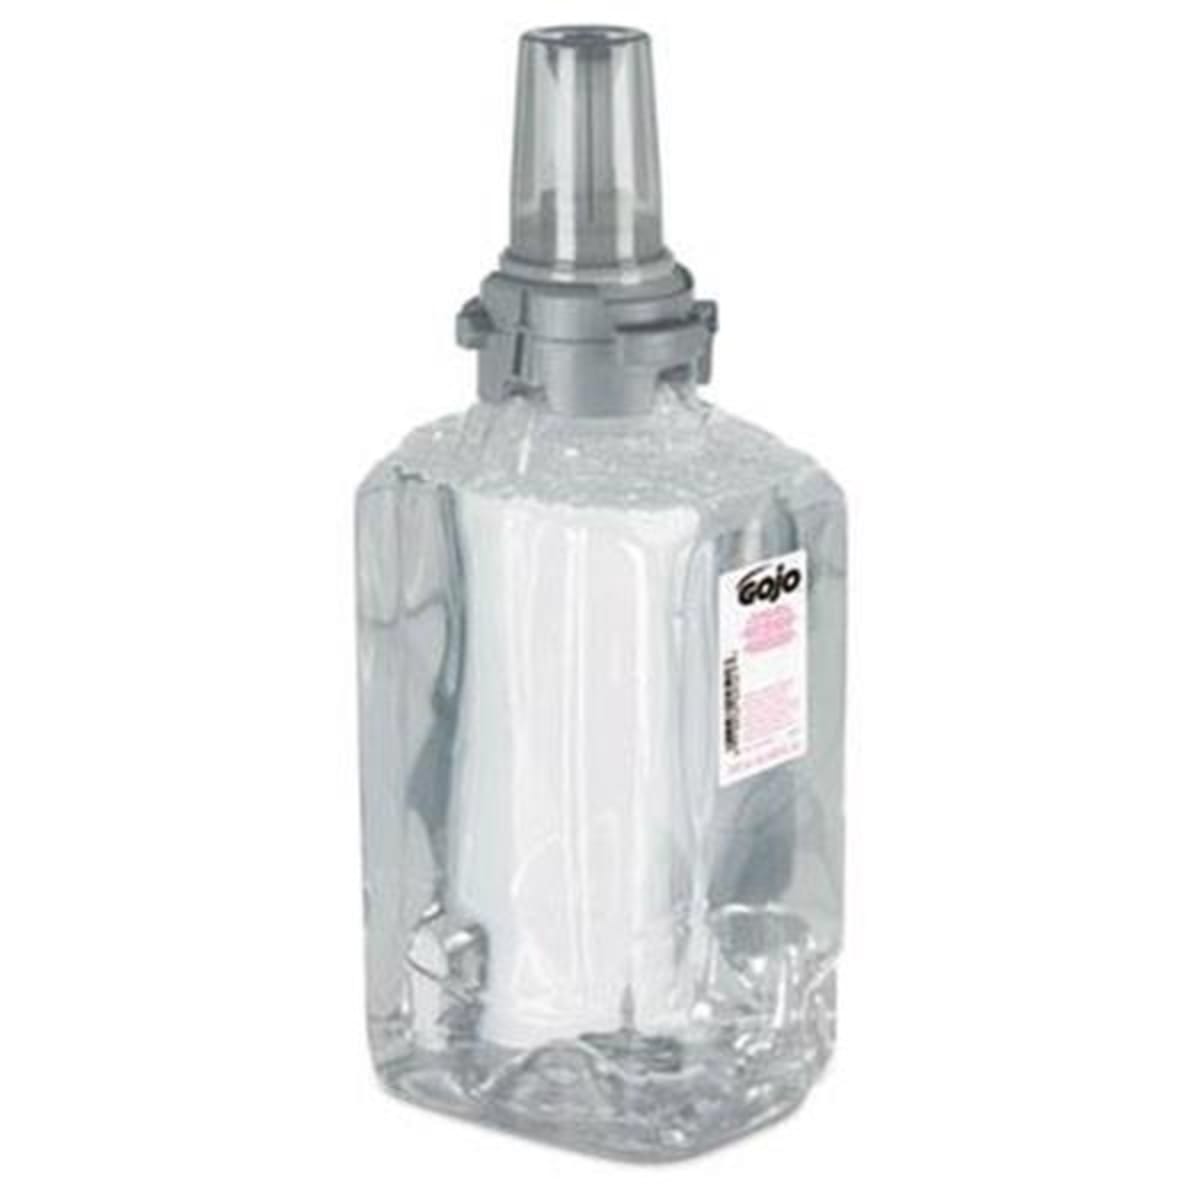 1,000Ml-102671 1000ml White Appeal APP17105 Hand Soap Dispenser 